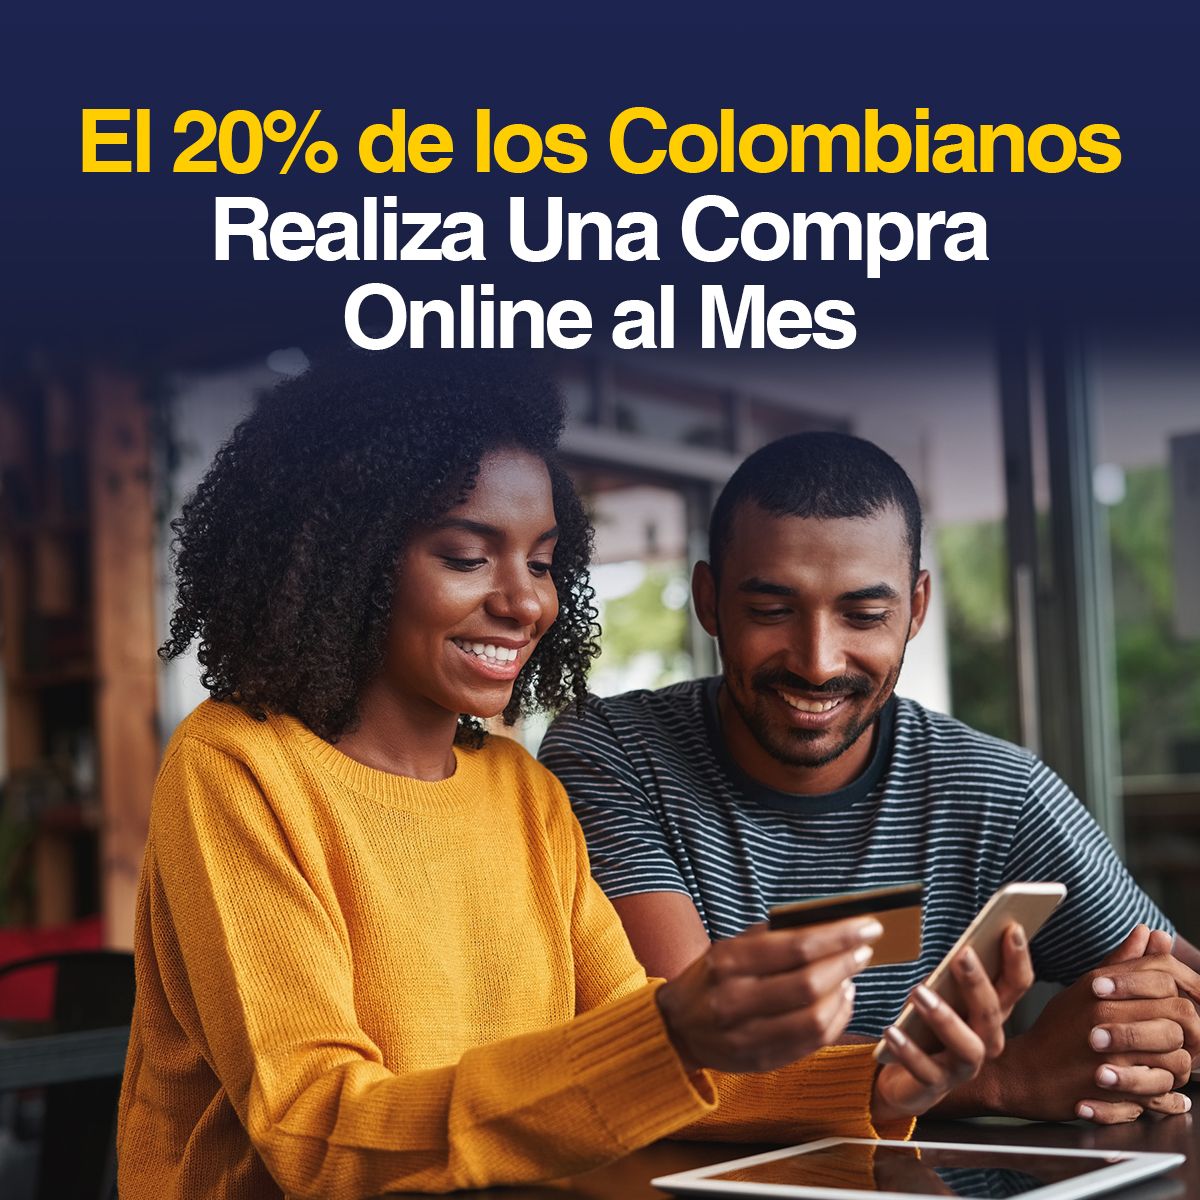 El 20% de los Colombianos Realiza Una Compra Online al Mes